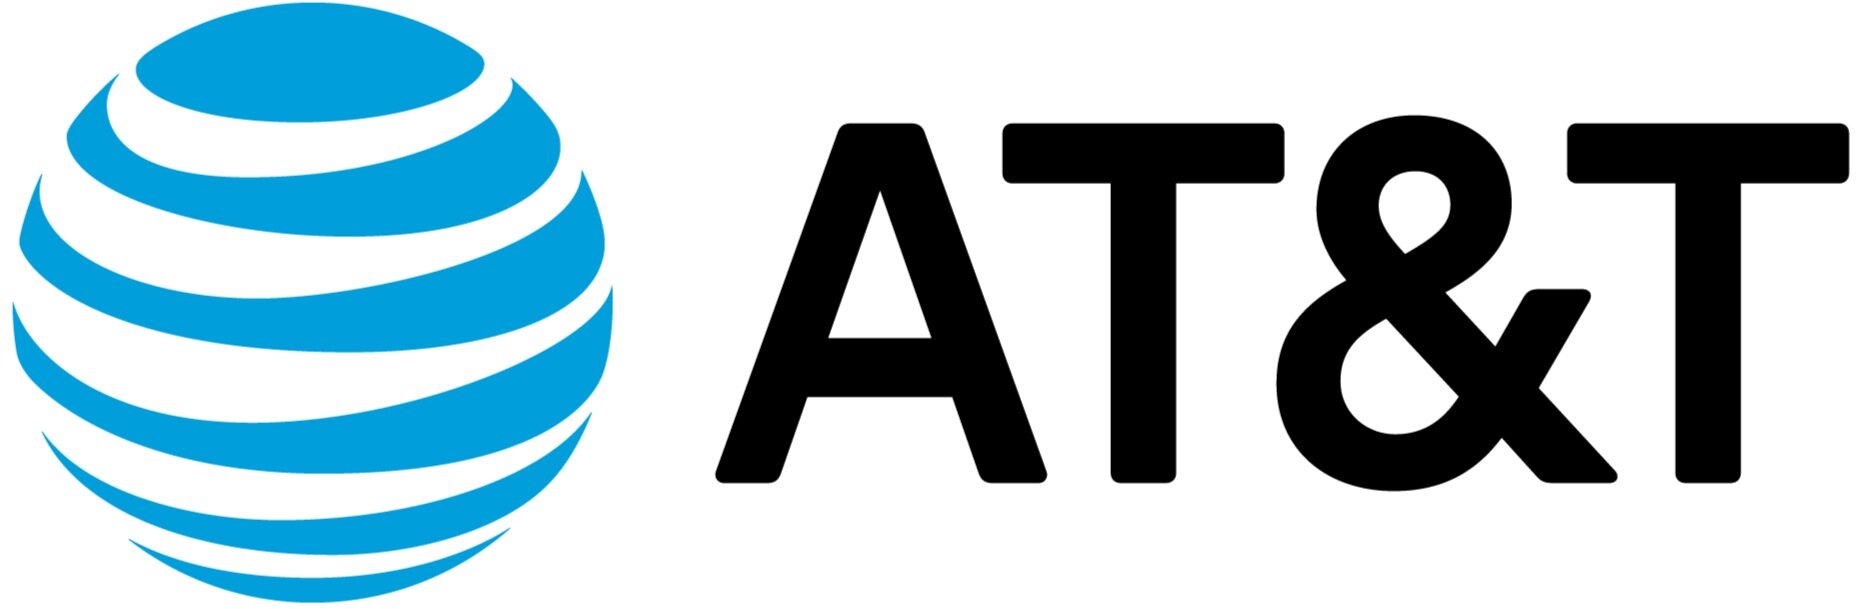 att-logo.jpg